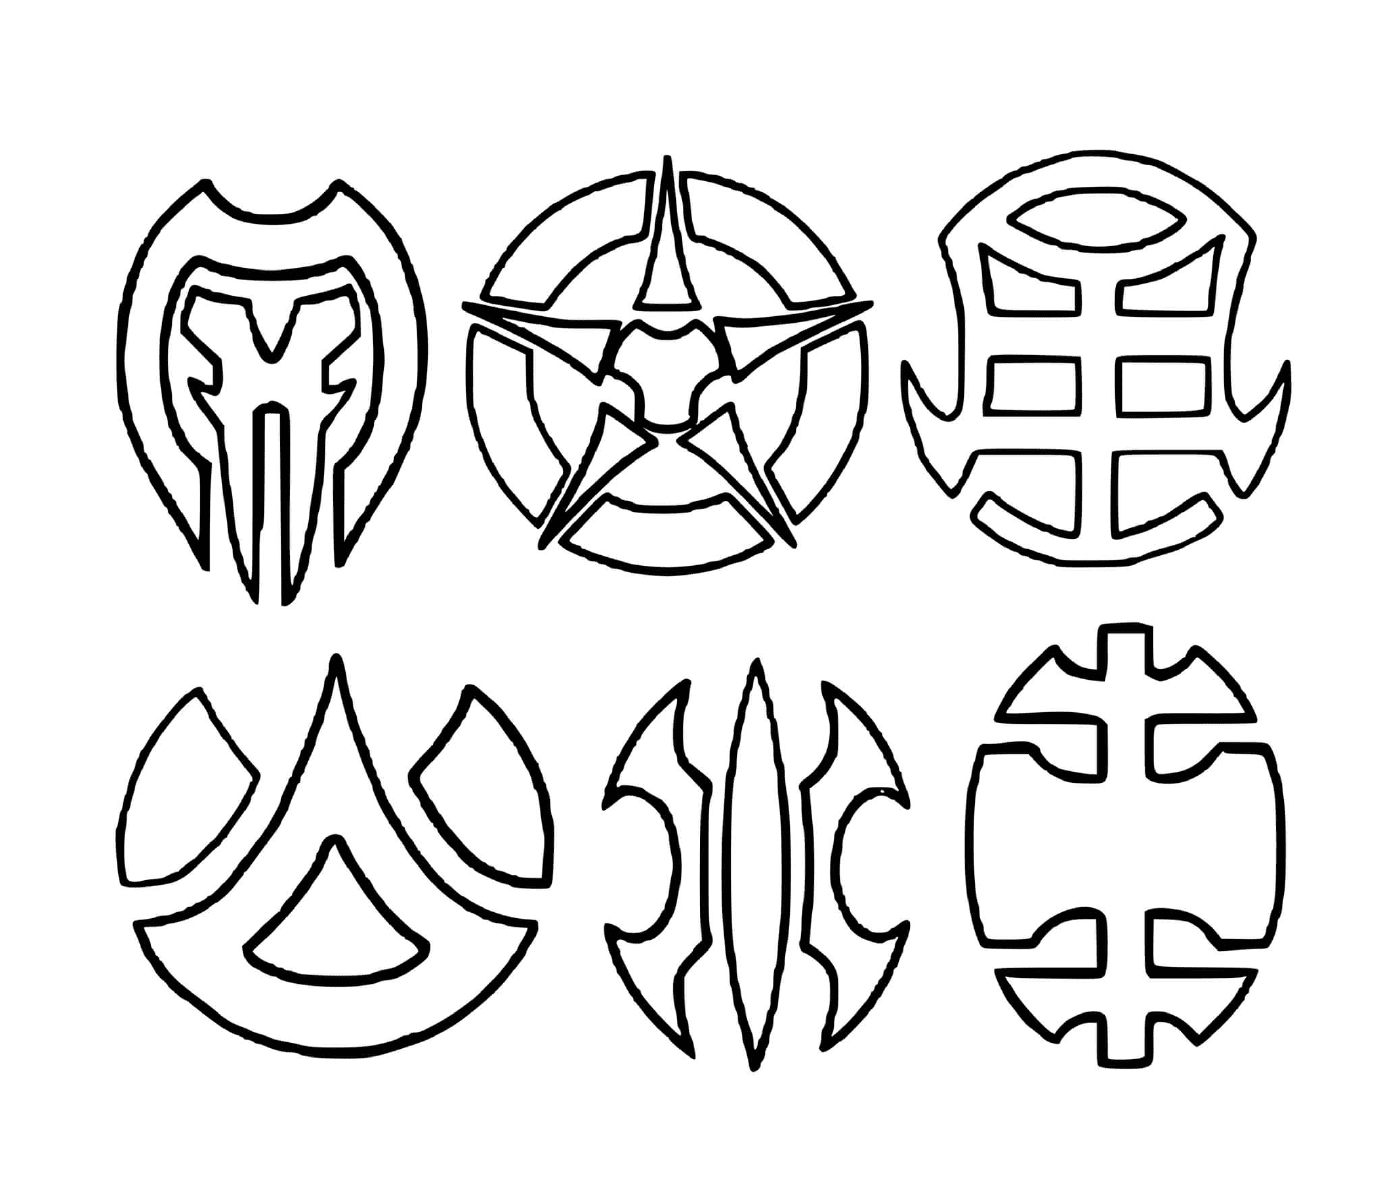  un insieme di sei simboli disegnati 